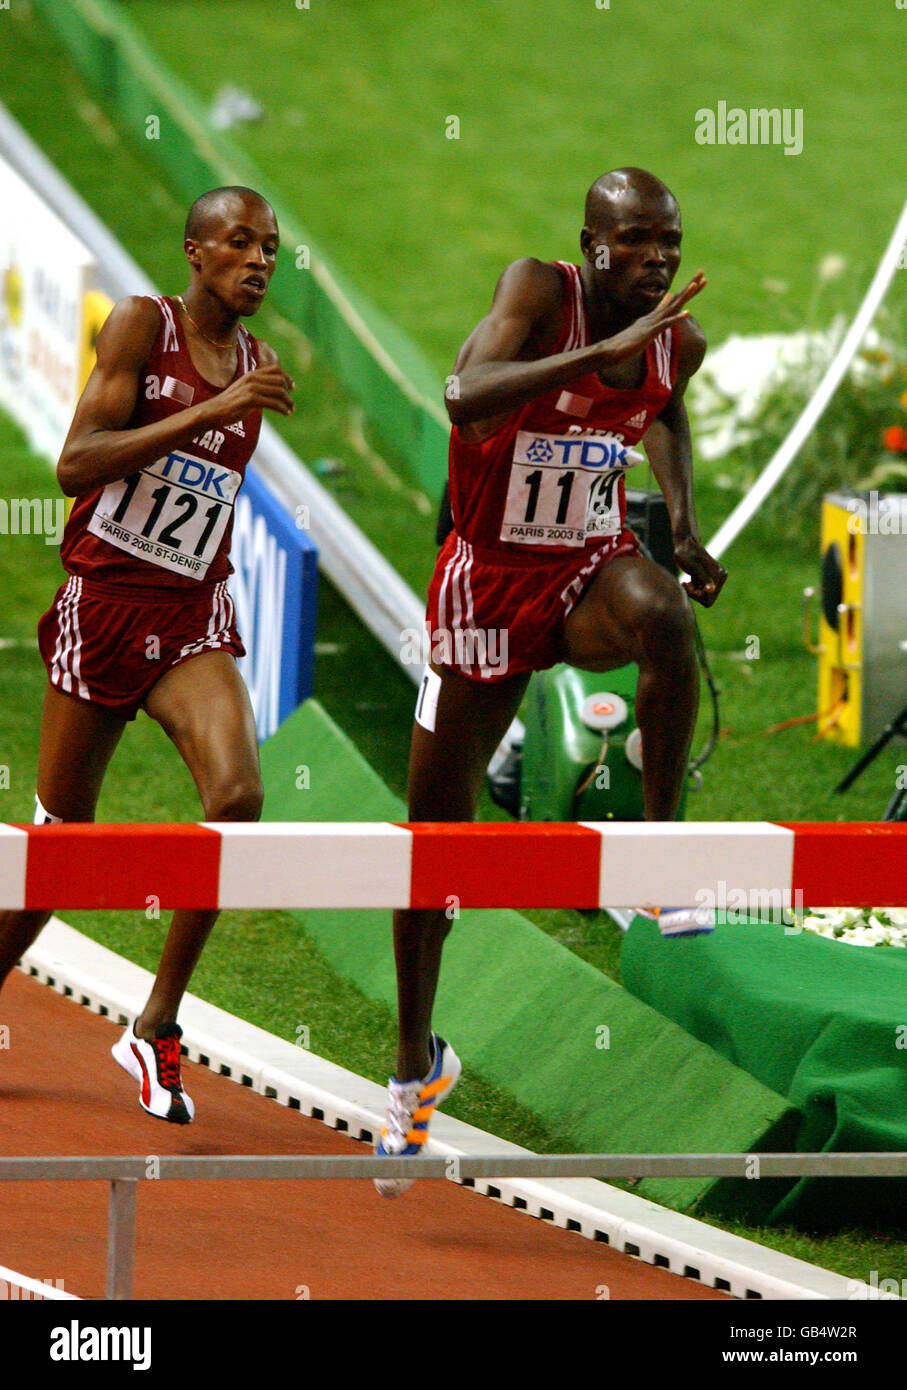 Leichtathletik - IAAF Leichtathletik-Weltmeisterschaften - Paris 2003 - Steeplechase der Männer über 3000 m. Katars Khamis Abdullah Saifeldin (1119) führt vor dem Landsmann Saif Saaeed Shaheen (1121) Stockfoto